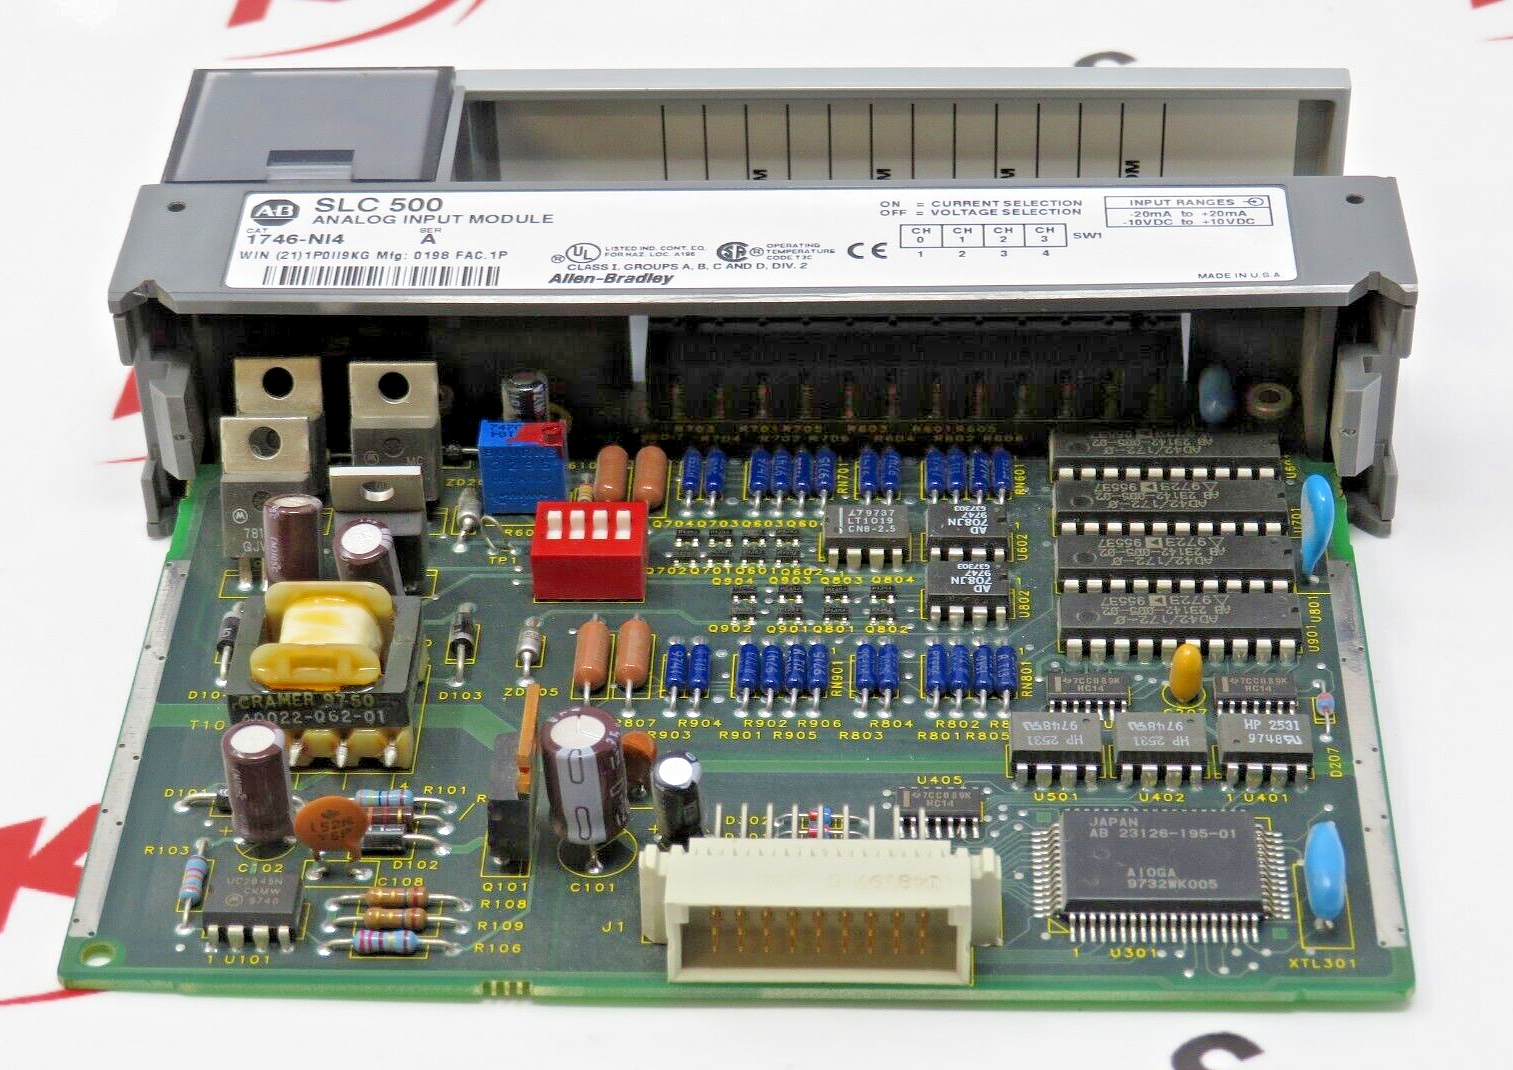 Allen-Bradley 1746-NI4 SLC 500 Analog Input Module Series A